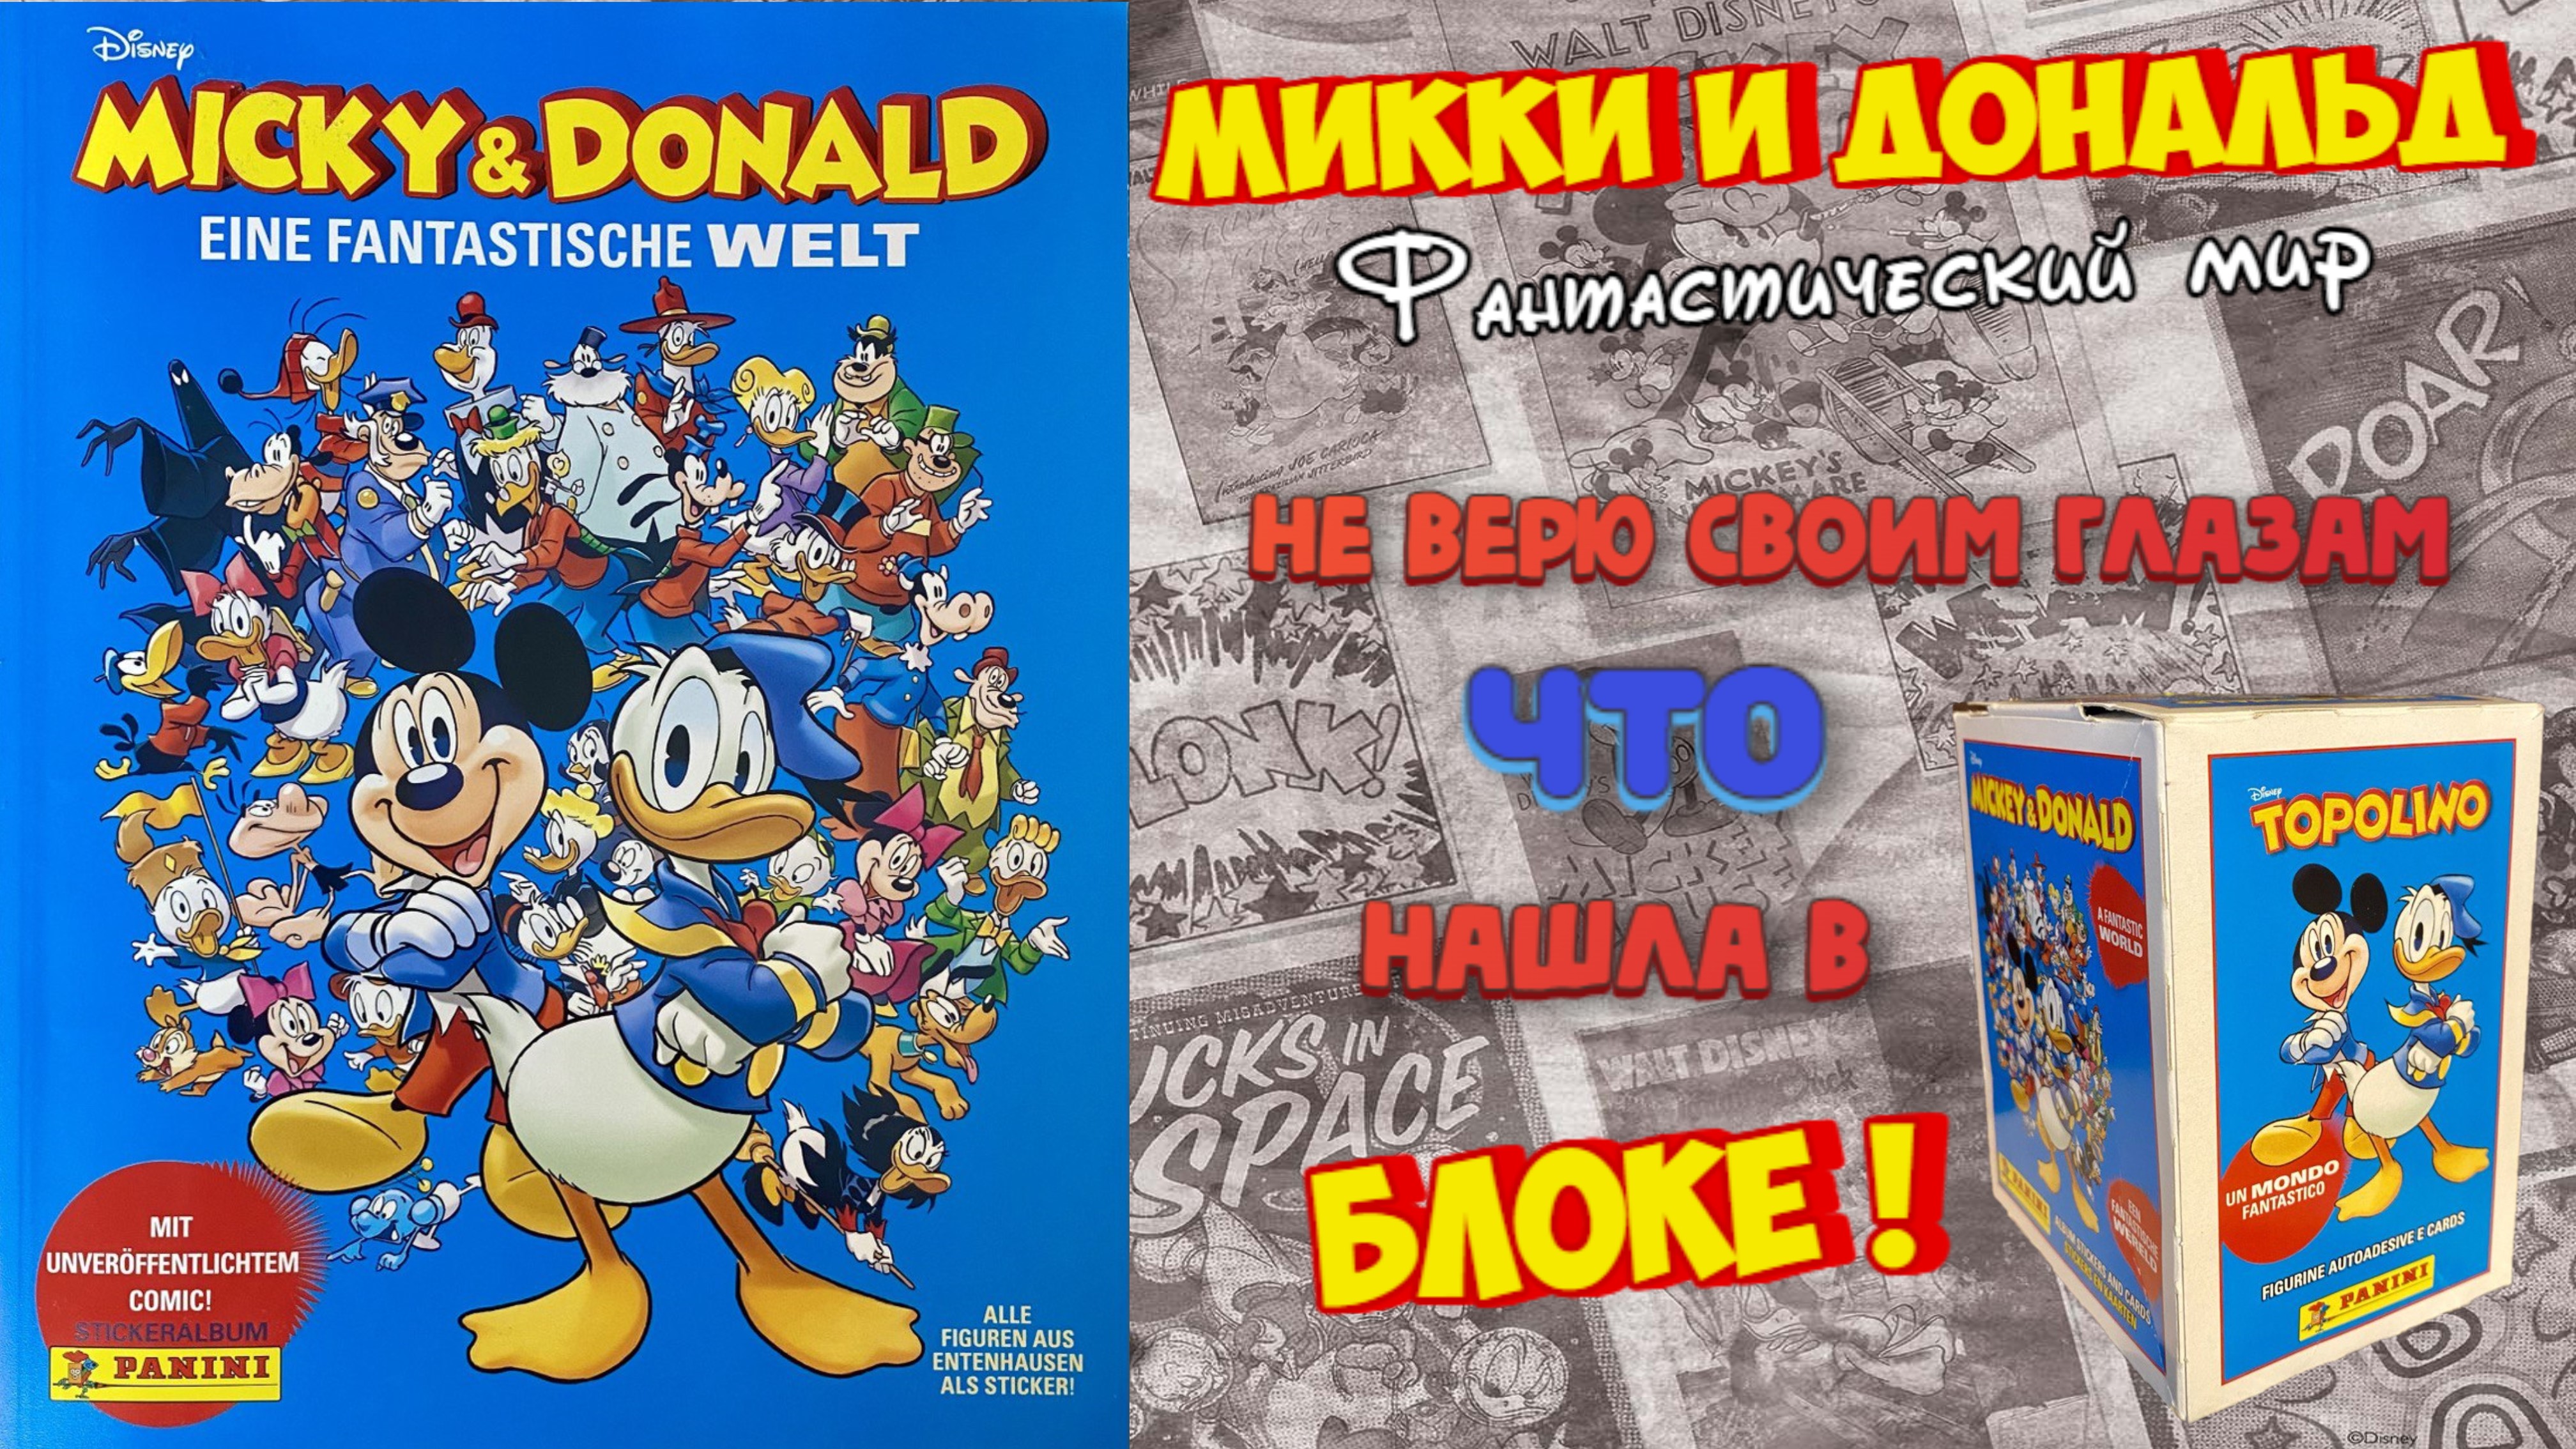 PANINI Альбом Micky & Donald (Микки и Дональд: Фантастический мир) 2023г.Открываю блок! Шок-Контент!